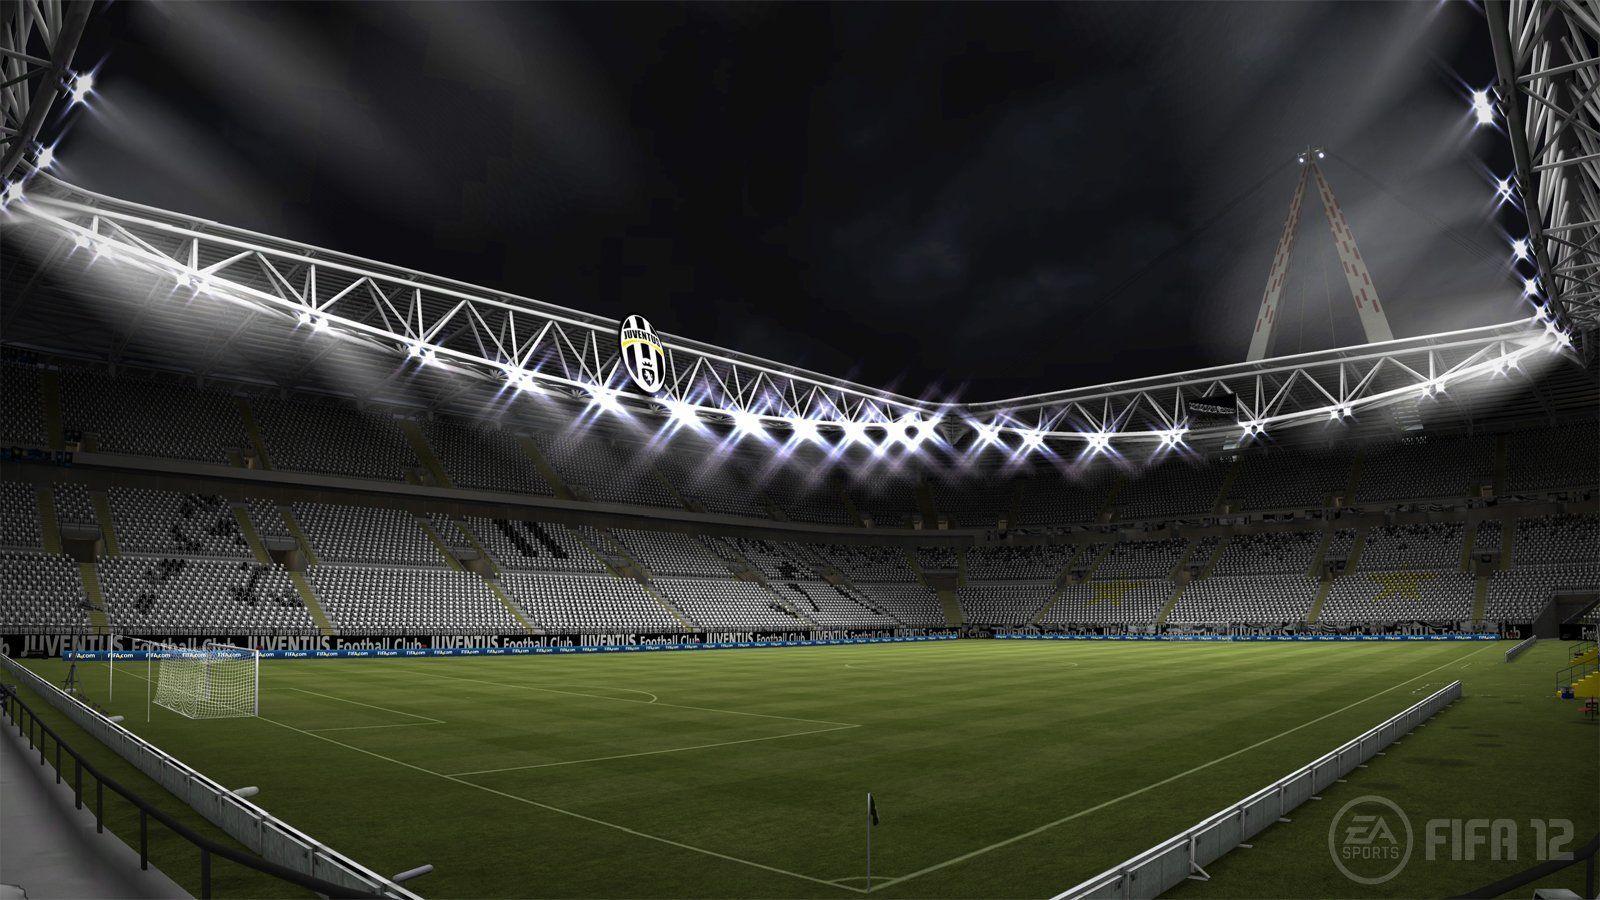 Juventus Stadium Wallpapers - Top Free ...